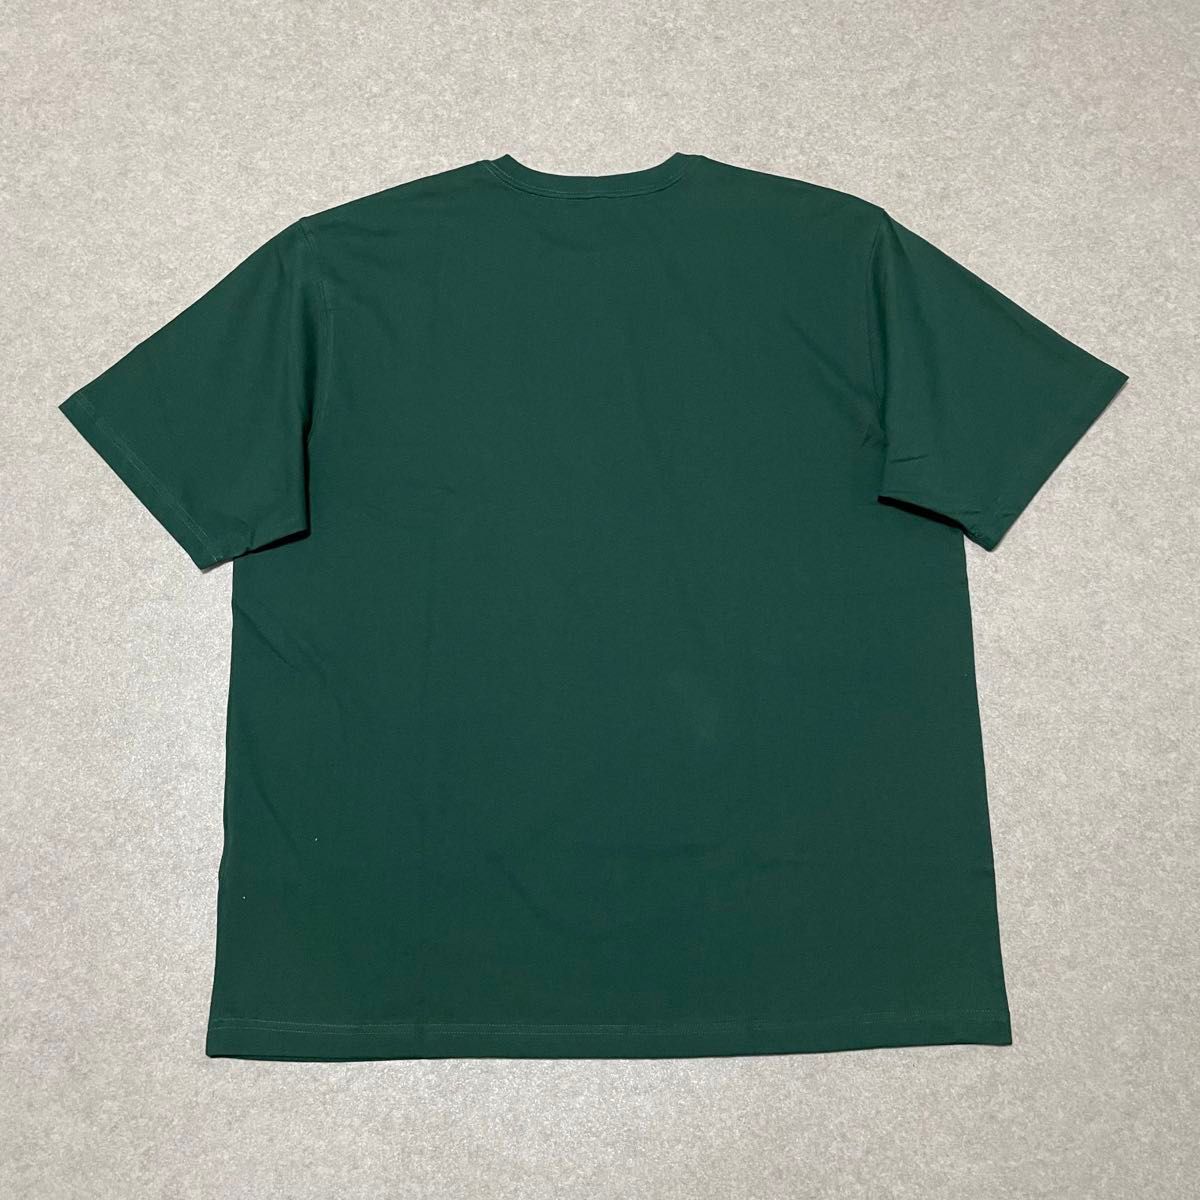 新品 カーハート ビッグ ポケット Tシャツ モスグリーン XL f574